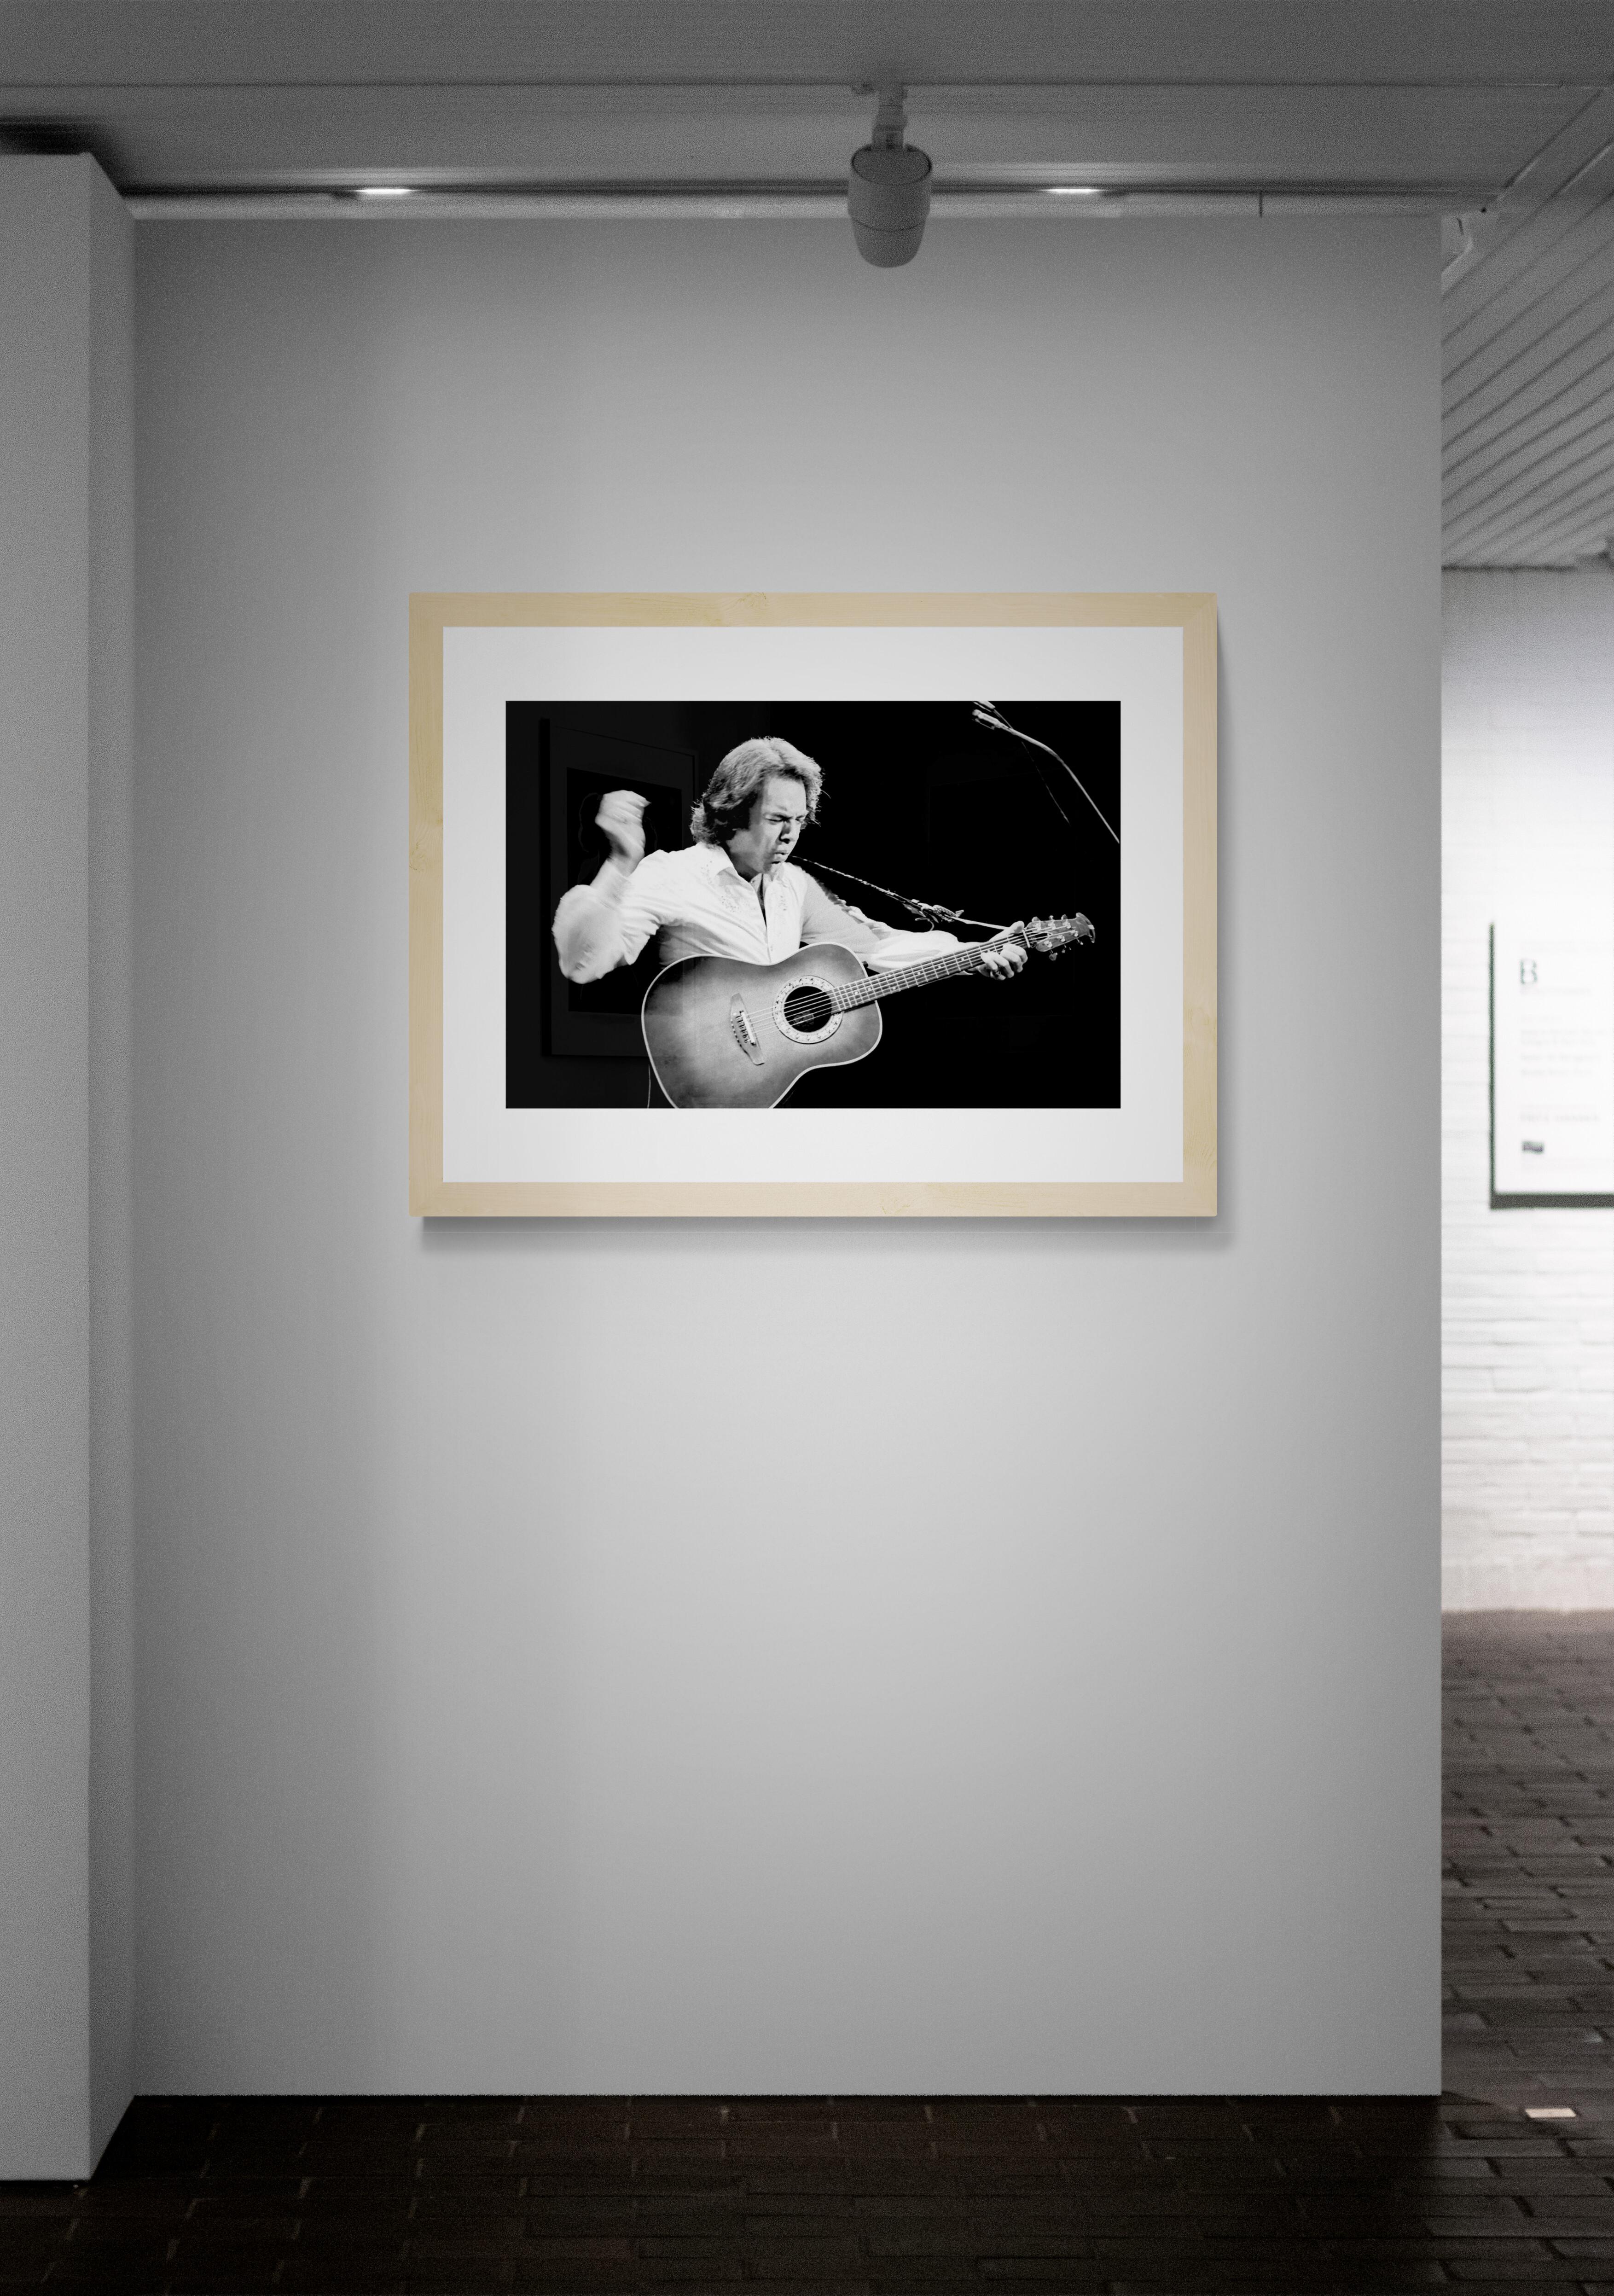 Titel: Neil Diamond Konzertfoto
Künstler: Richard E. Aaron
Nachlass-Edition: Handnummeriert mit Nachlassstempel im Rand, Signaturstempel auf der Rückseite, Pigmentdruck auf Hahnemühle Photo Rag Pearl, 100% Baumwollpapier, Kunstdruckpapier.